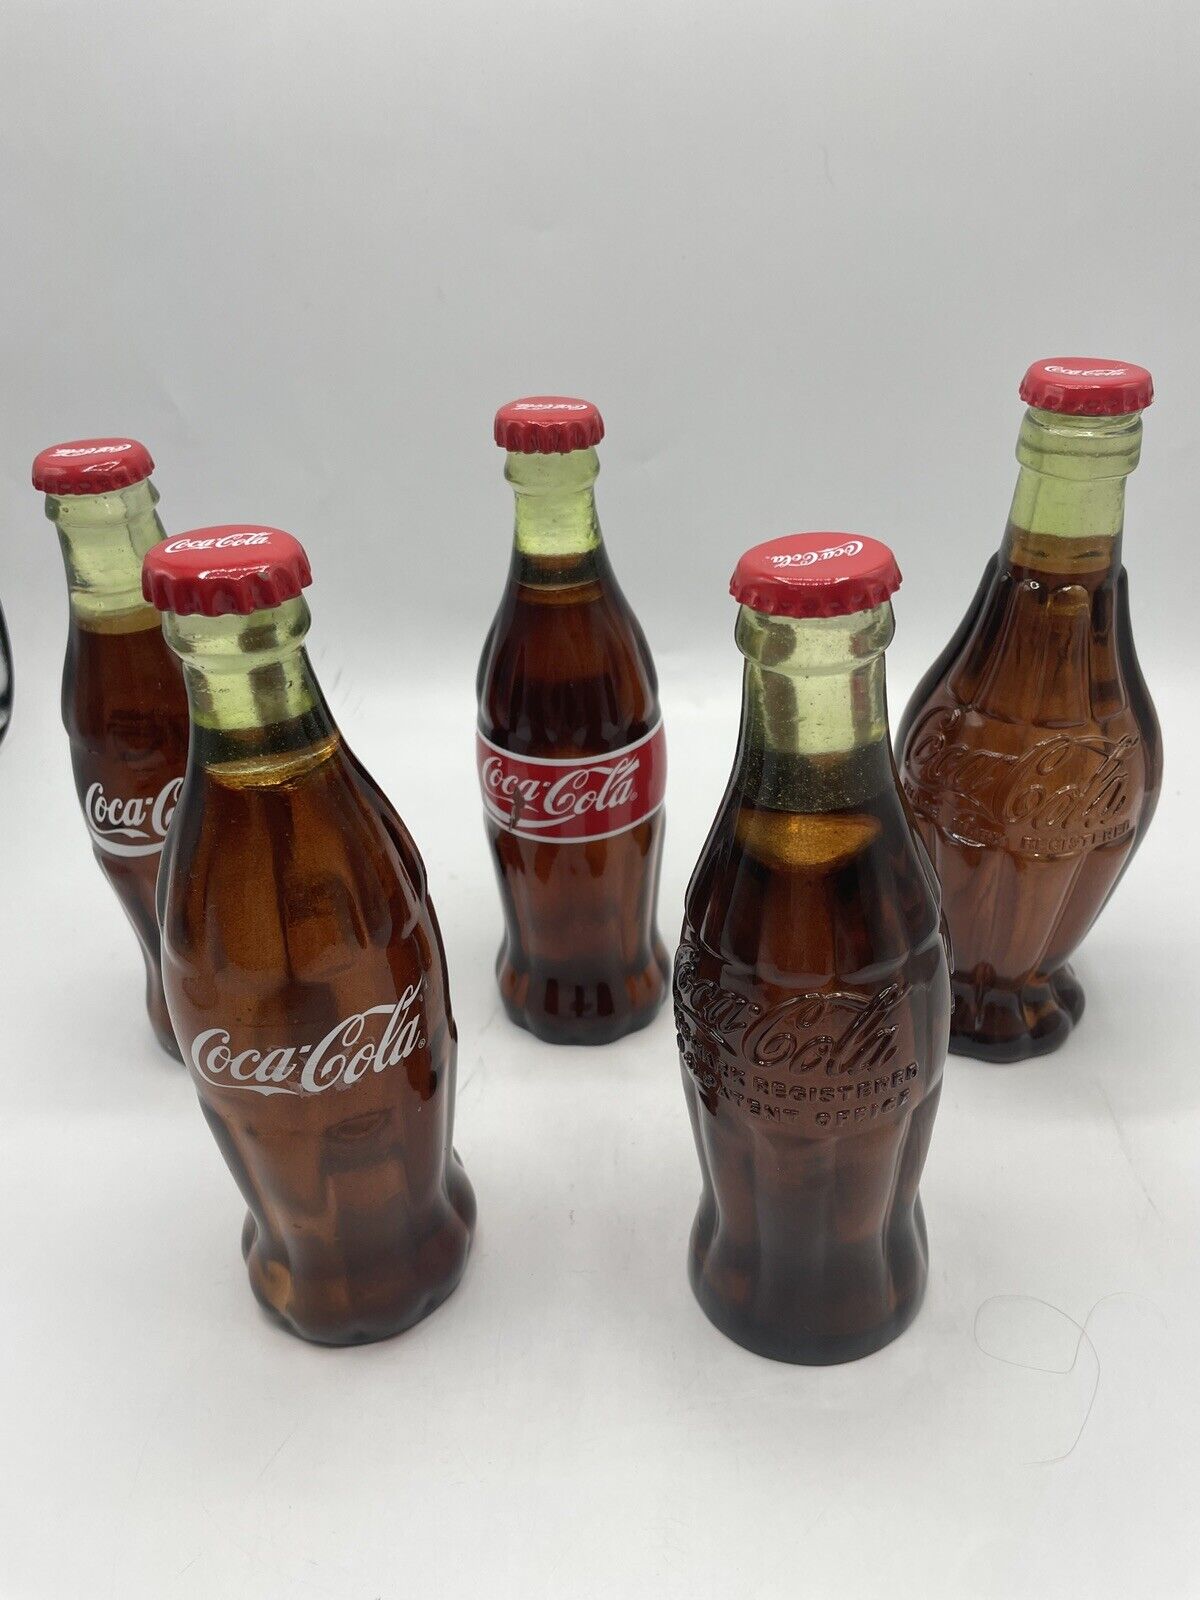 1915 1957 1961 1986 1991 plastic Replica COCA COLA Bottles Hamilton Collection